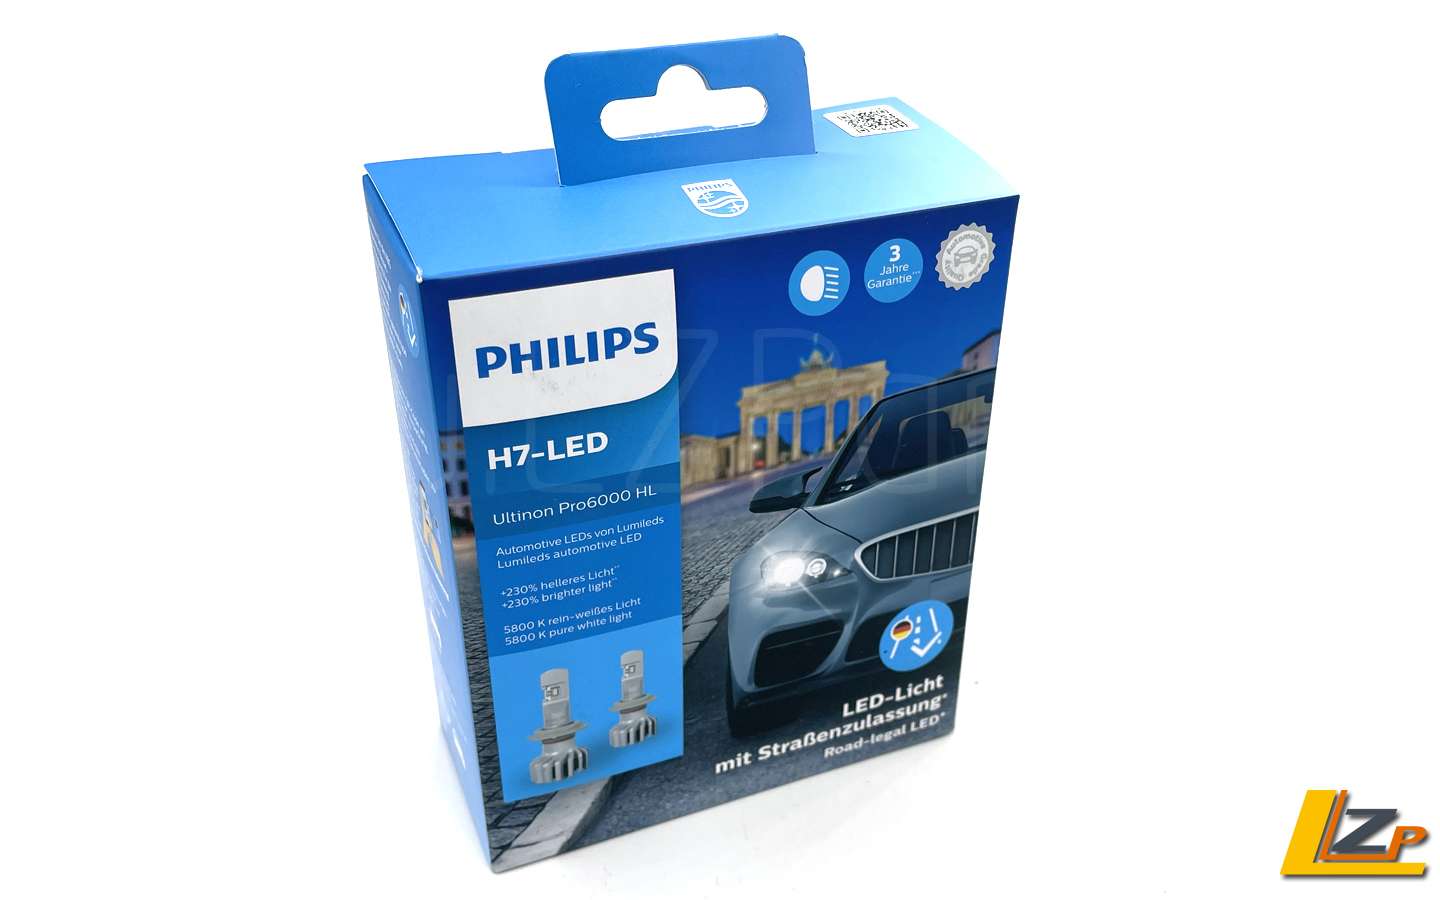 Philips Ultinon Pro6000 H7-LED mit Zulassung für Dacia Duster-11972U6000X2